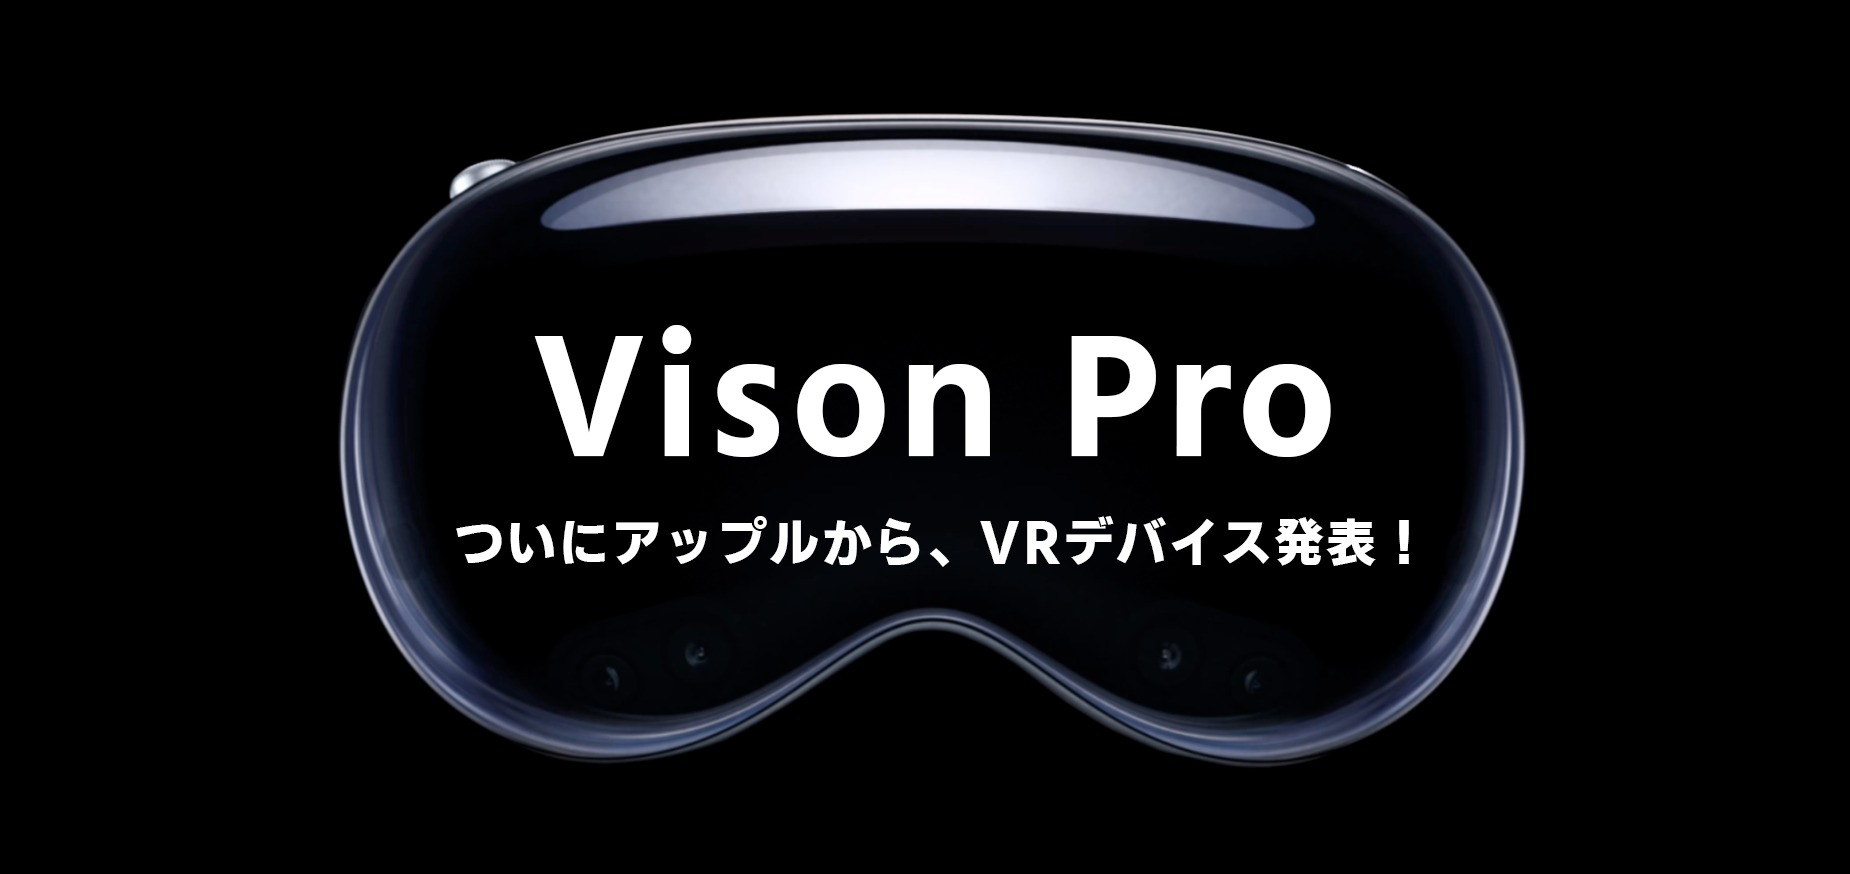 Apple vision pro 何ができる 発売日 解像度 体験 値段